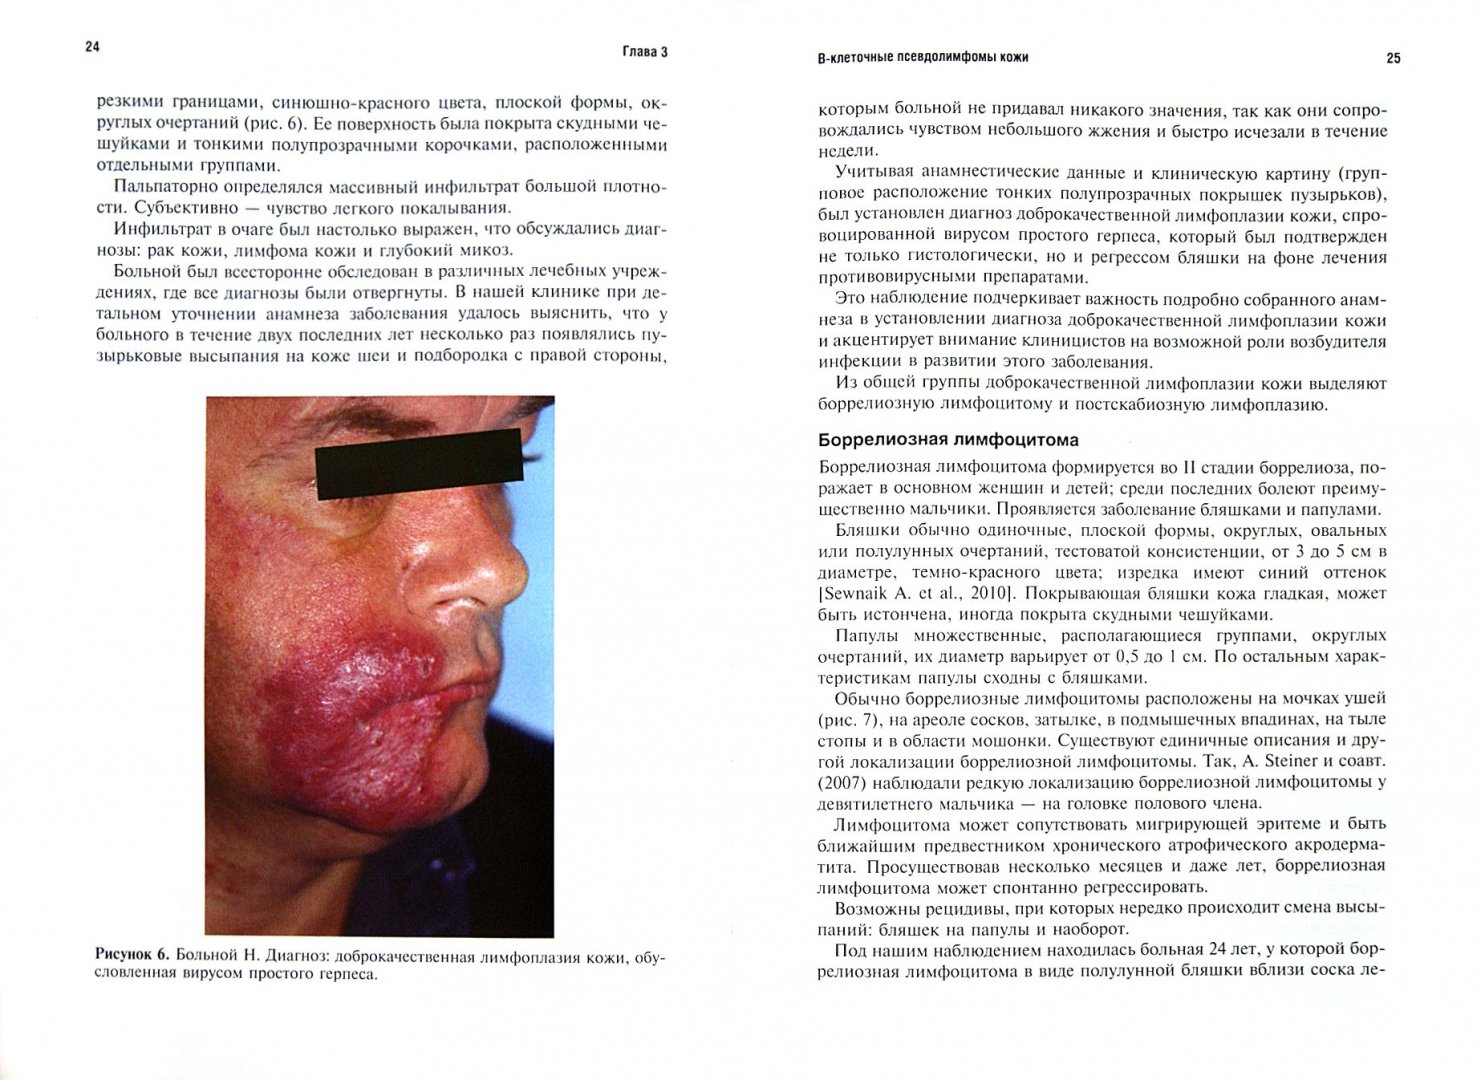 Иллюстрация 1 из 7 для Псевдолимфомы кожи - Олисова, Потекаев | Лабиринт - книги. Источник: Лабиринт